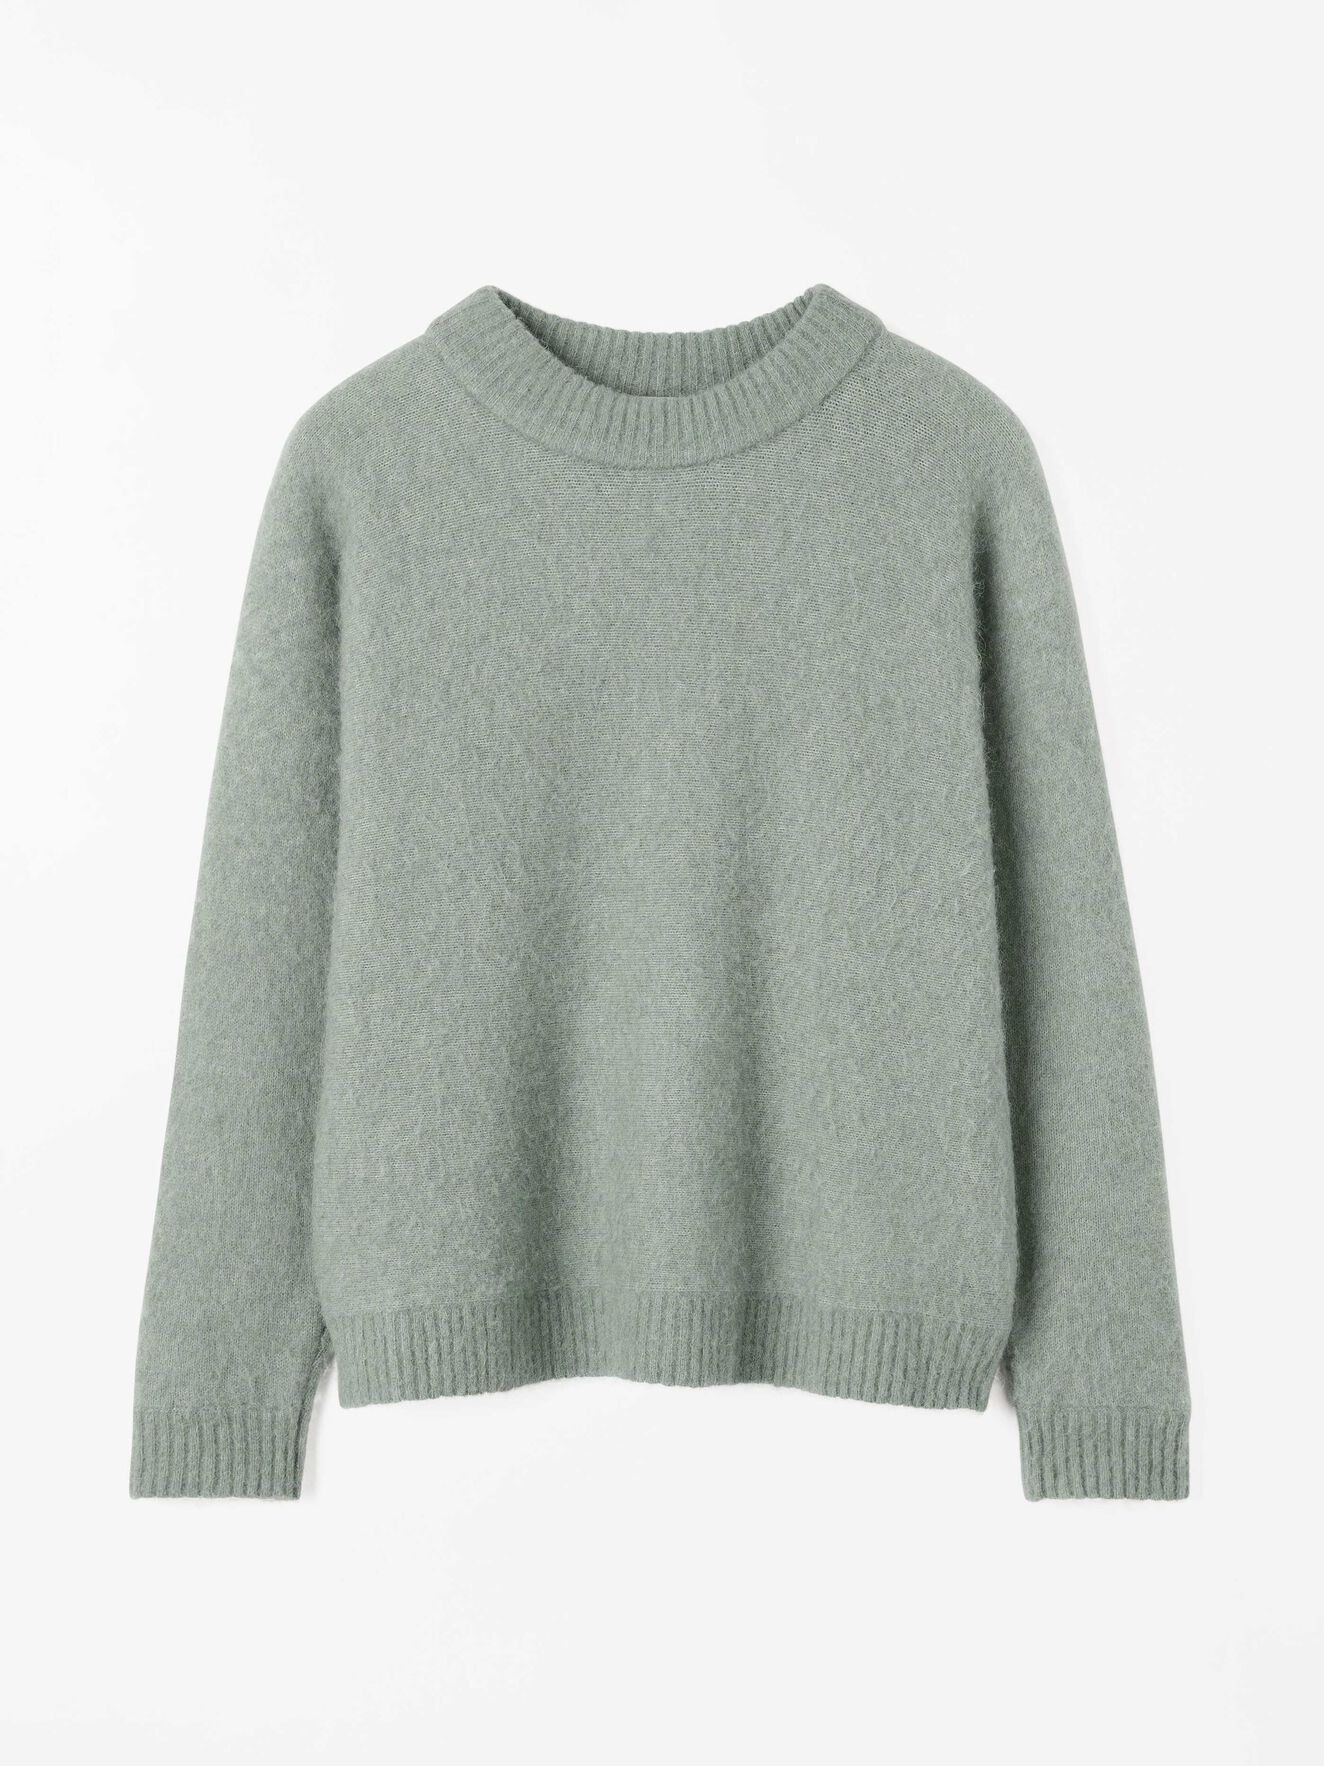 Gwynn A Pullover - Handla Alla Kläder online